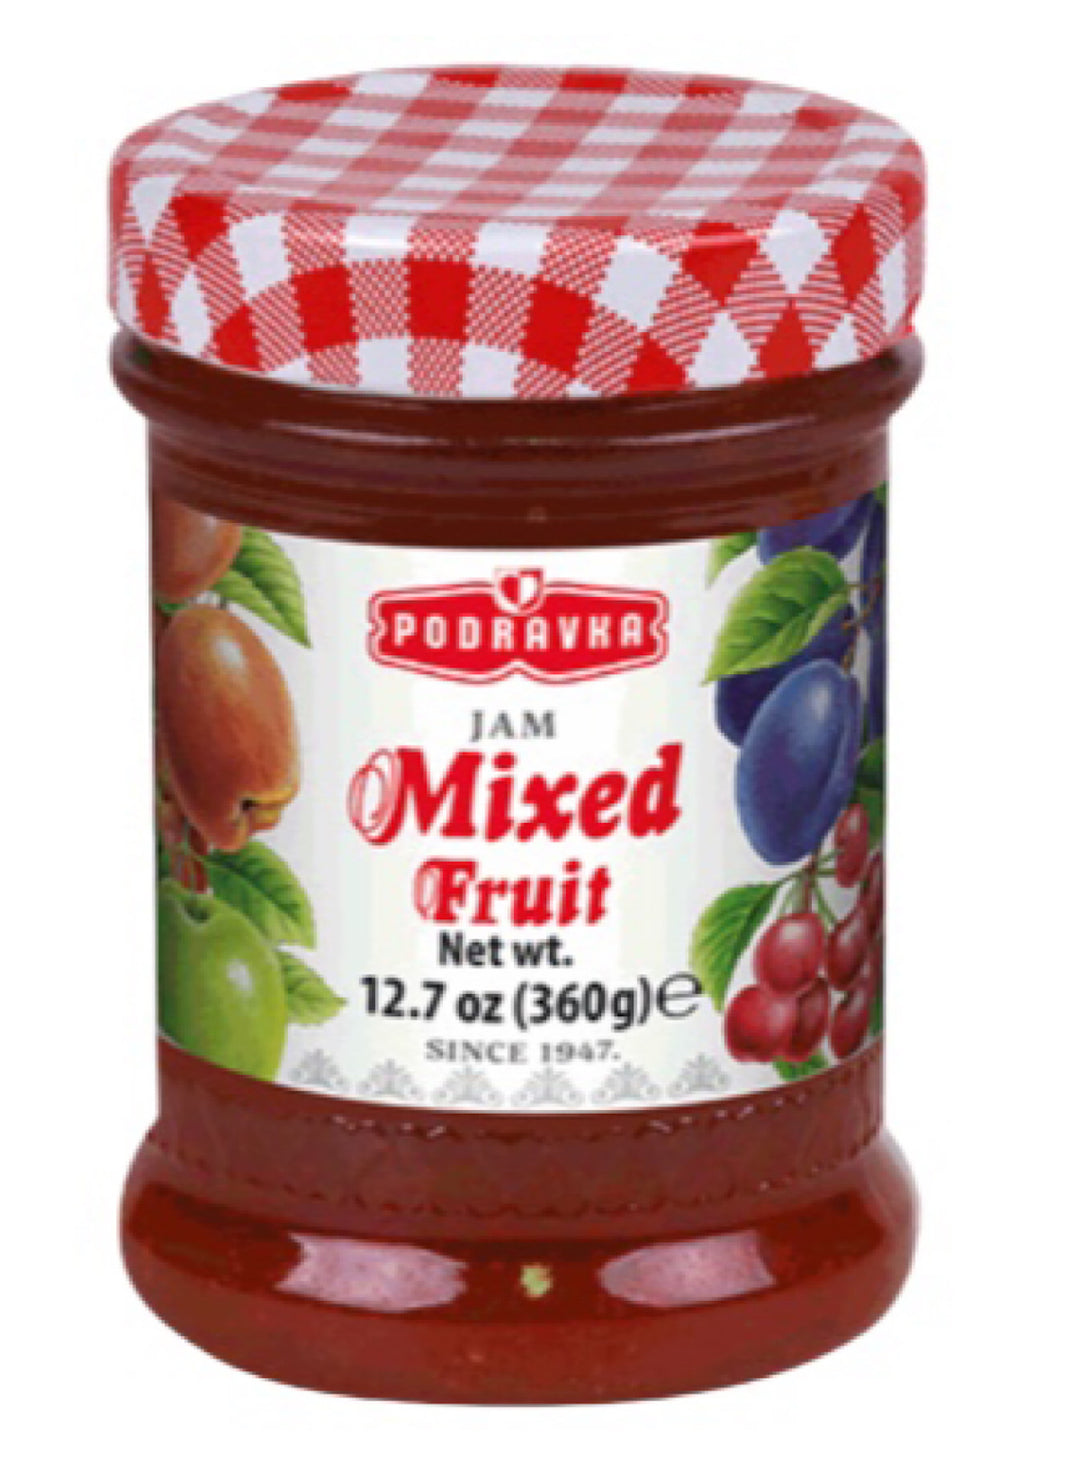 Mixed Fruit Jam - Podravka - 360g